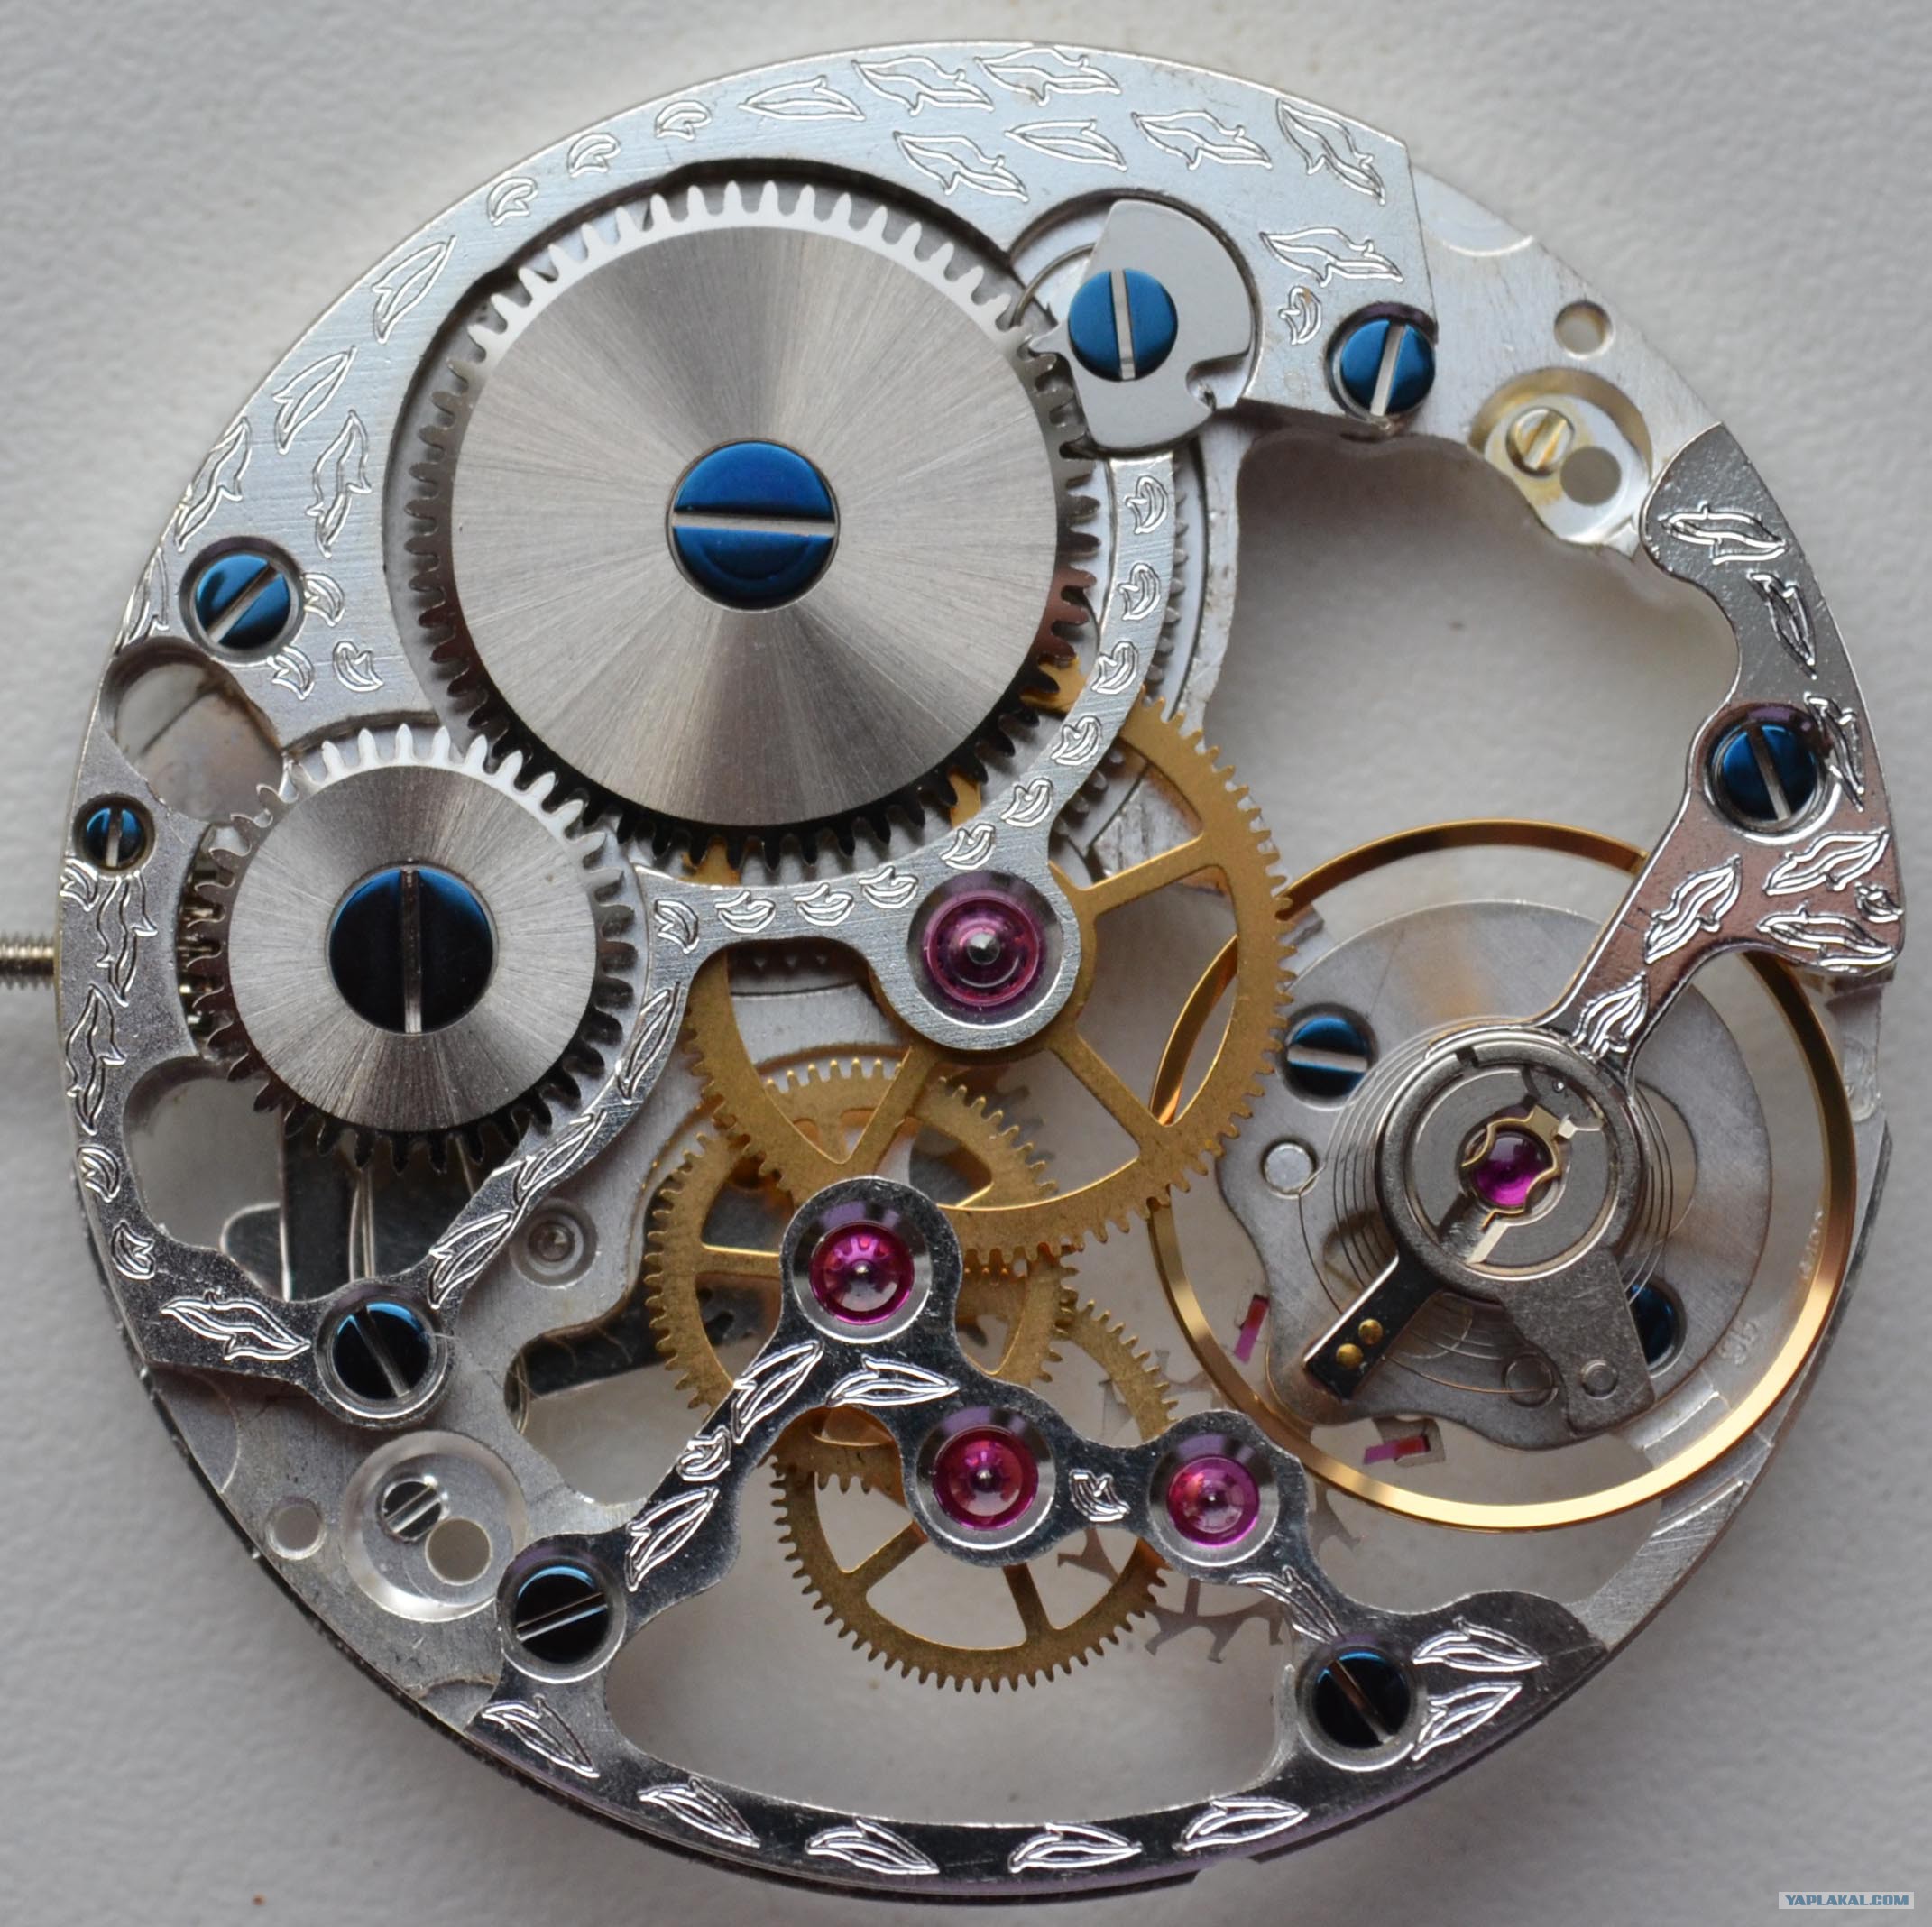 Как изготавливают детали часов. Eta 6498 скелетон. Швейцарский механизм часов. Детали часов. Детали механических часов.